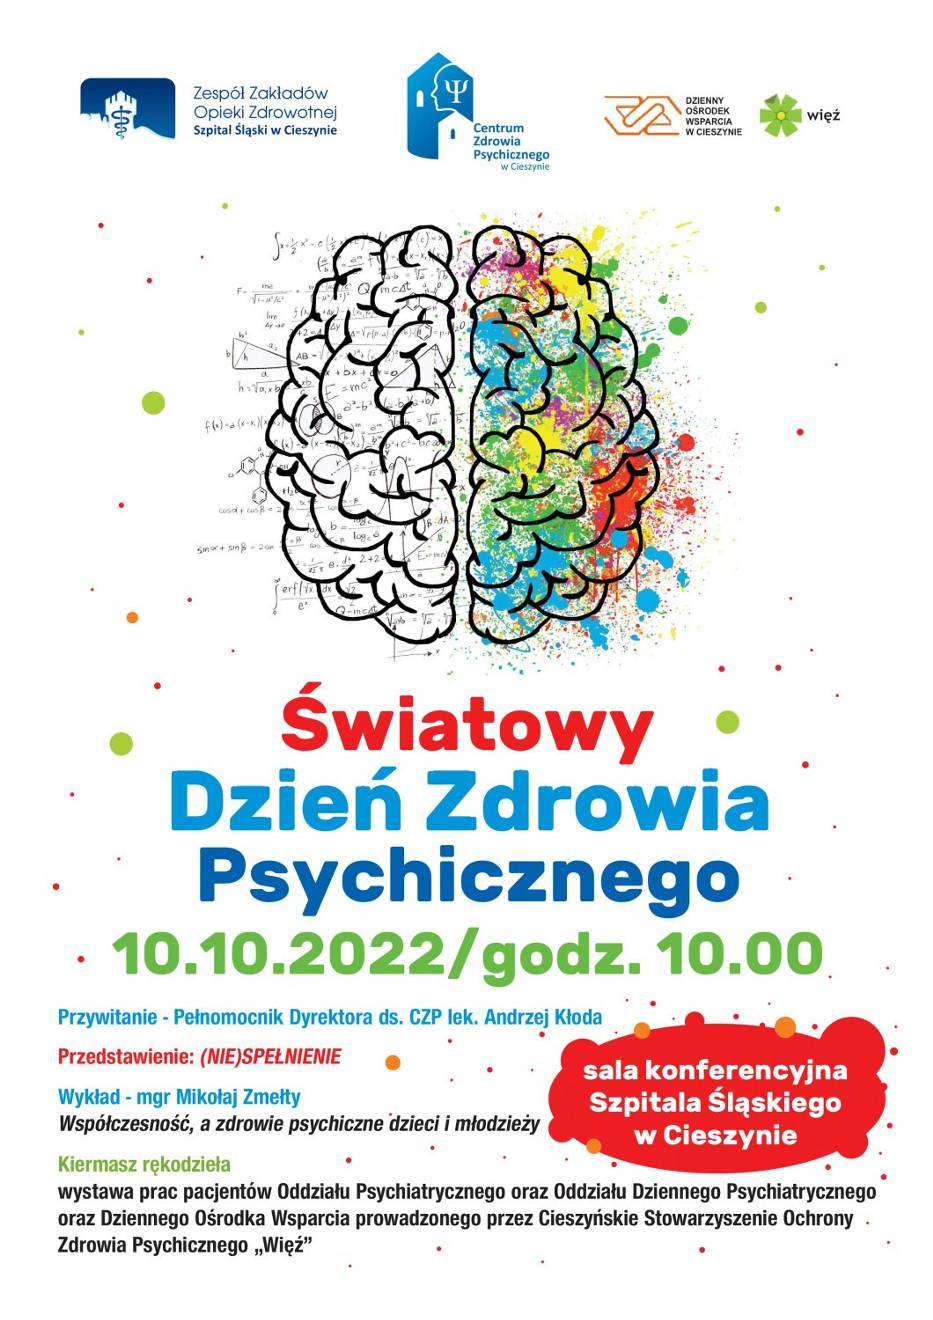 Światowy Dzień Zdrowia Psychicznego w Szpitalu Śląskim w Cieszynie, plakat